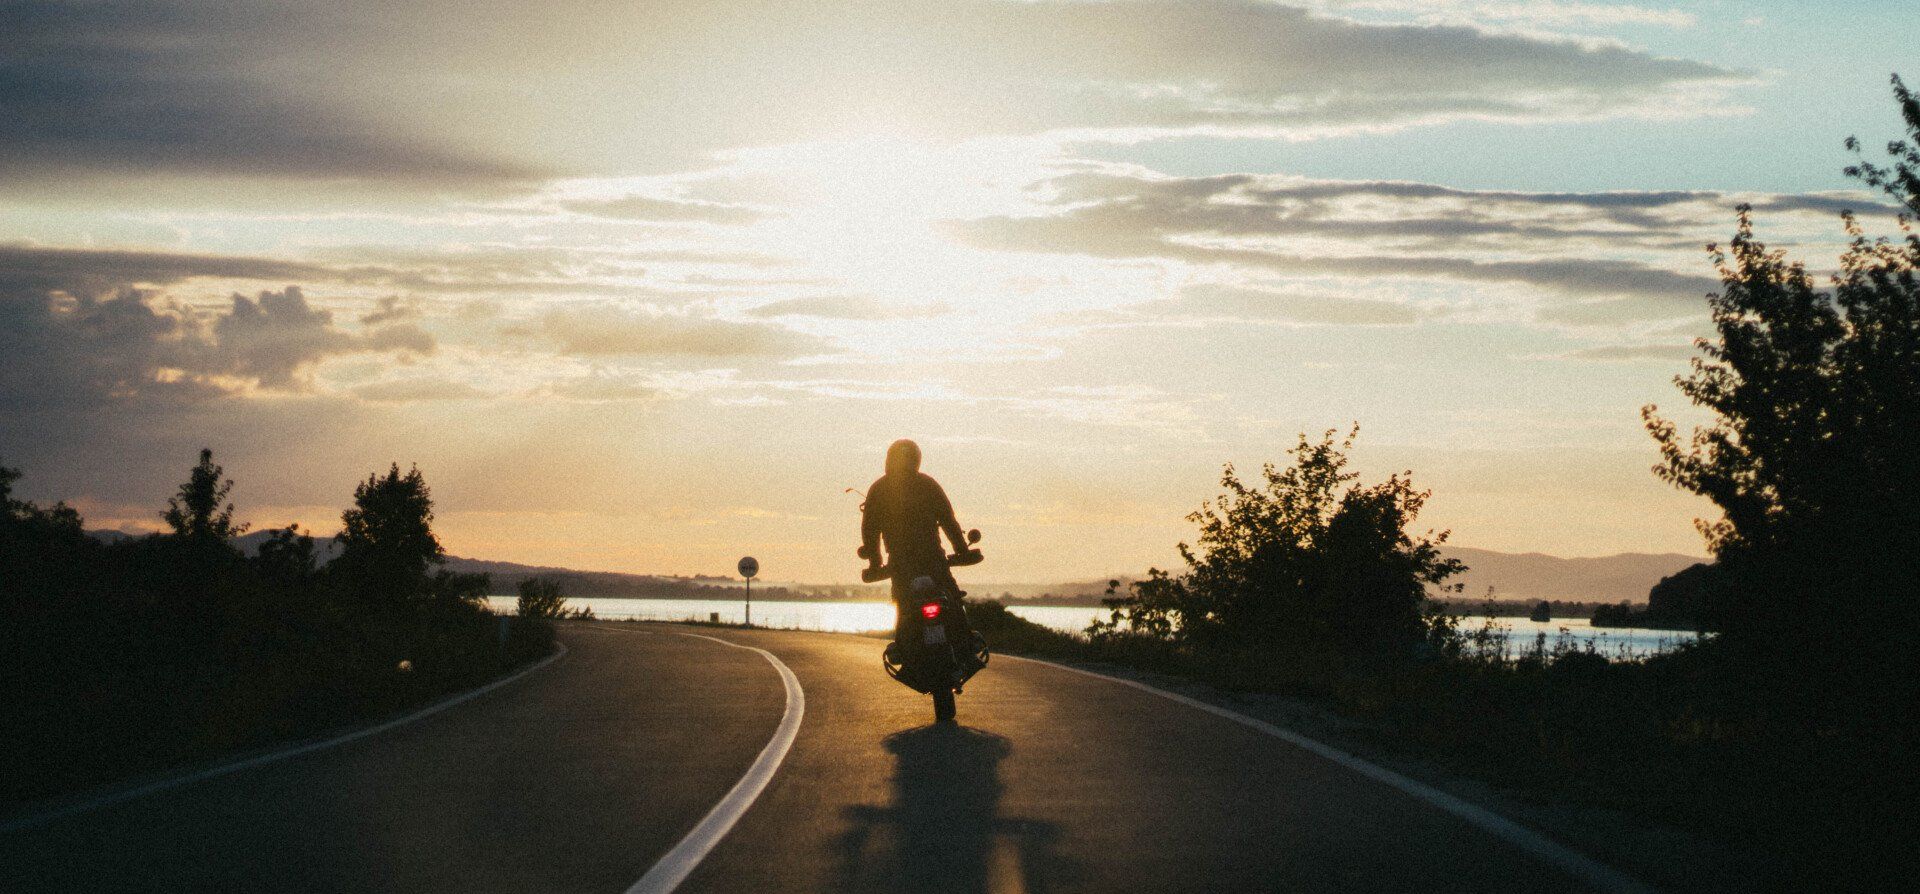 Man riding motorcycle during sunset